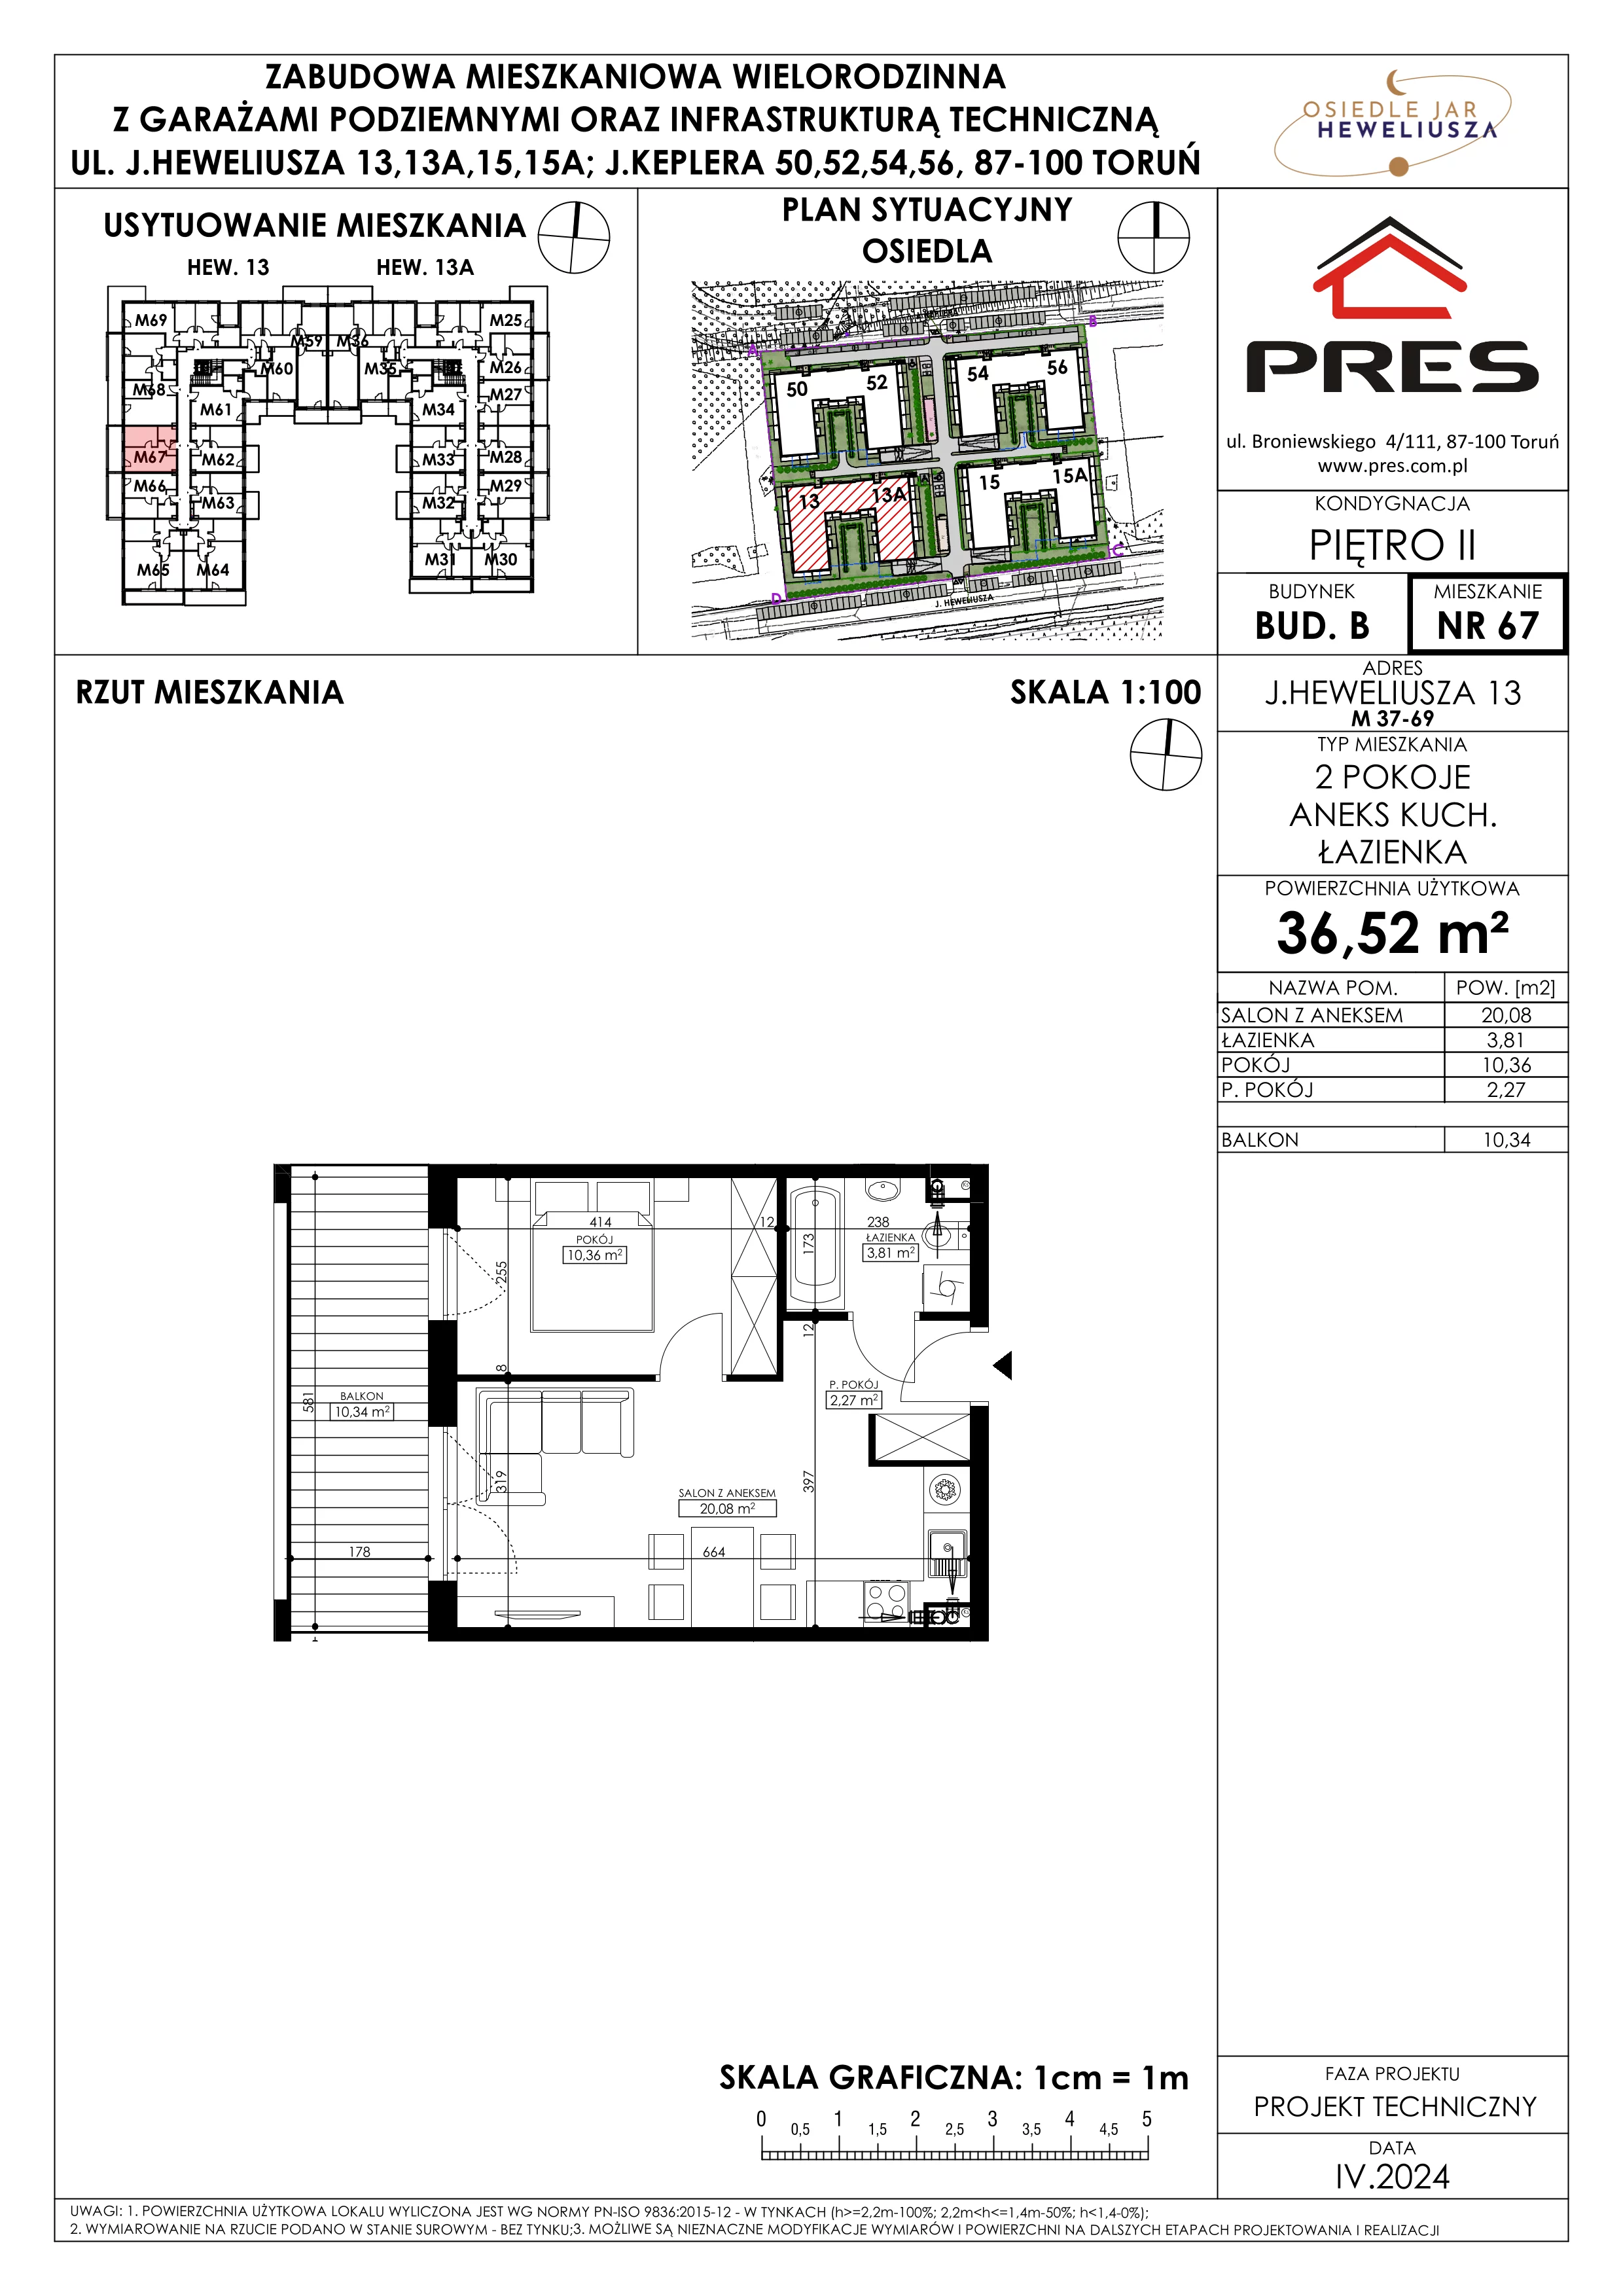 Mieszkanie 36,52 m², piętro 2, oferta nr 67, Osiedle JAR Heweliusza - Etap II, Toruń, Wrzosy, JAR, ul. Heweliusza 13-15A